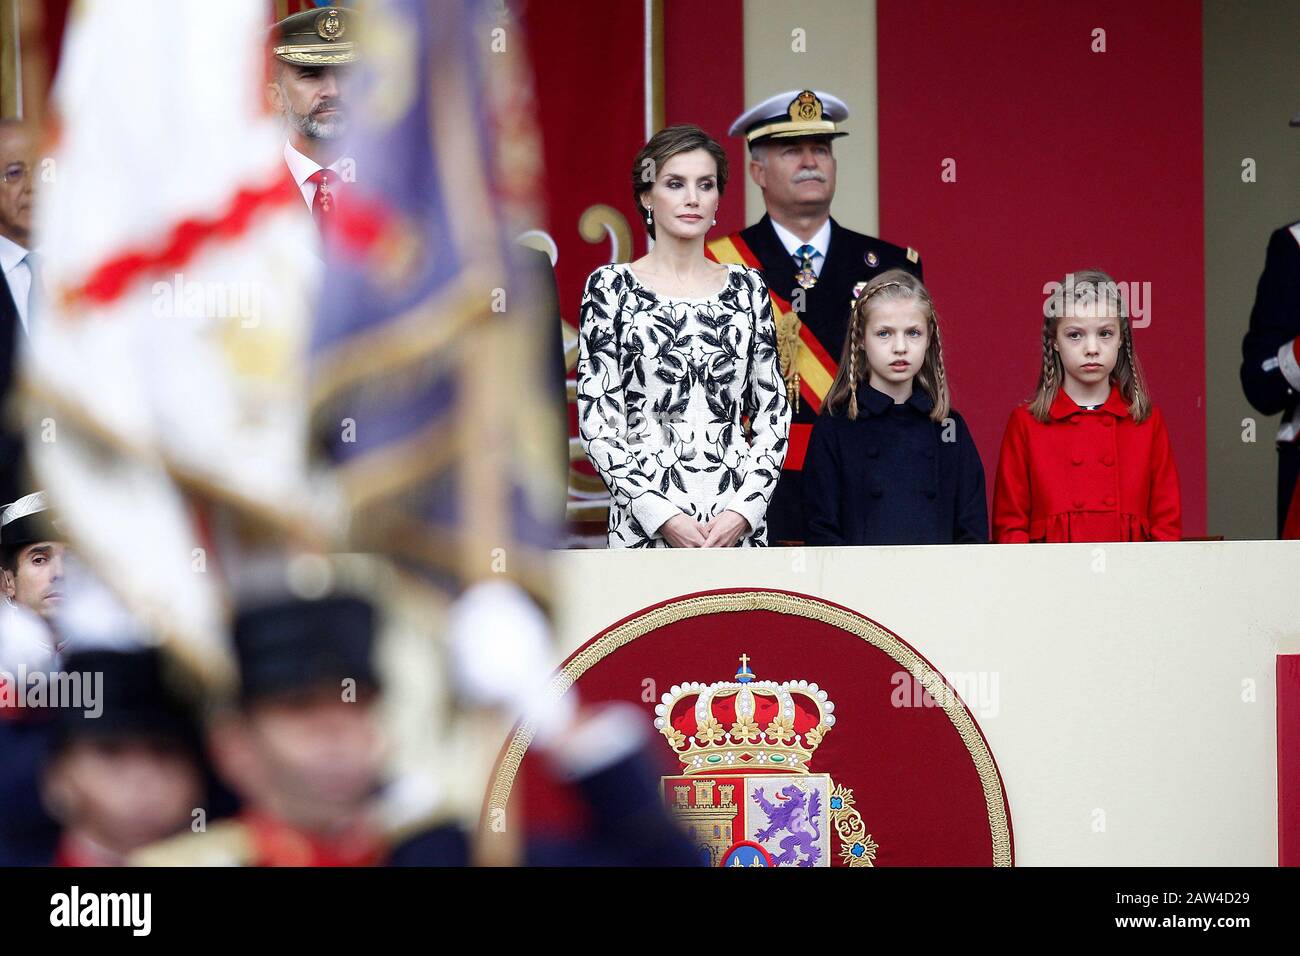 (L-R) die spanische Königin Letizia, die spanische Prinzessin Leonor und die spanische Prinzessin Sofia nehmen an der Militärparade des nationalen Tages Teil. Oktober 2016. (ALTERPH Stockfoto